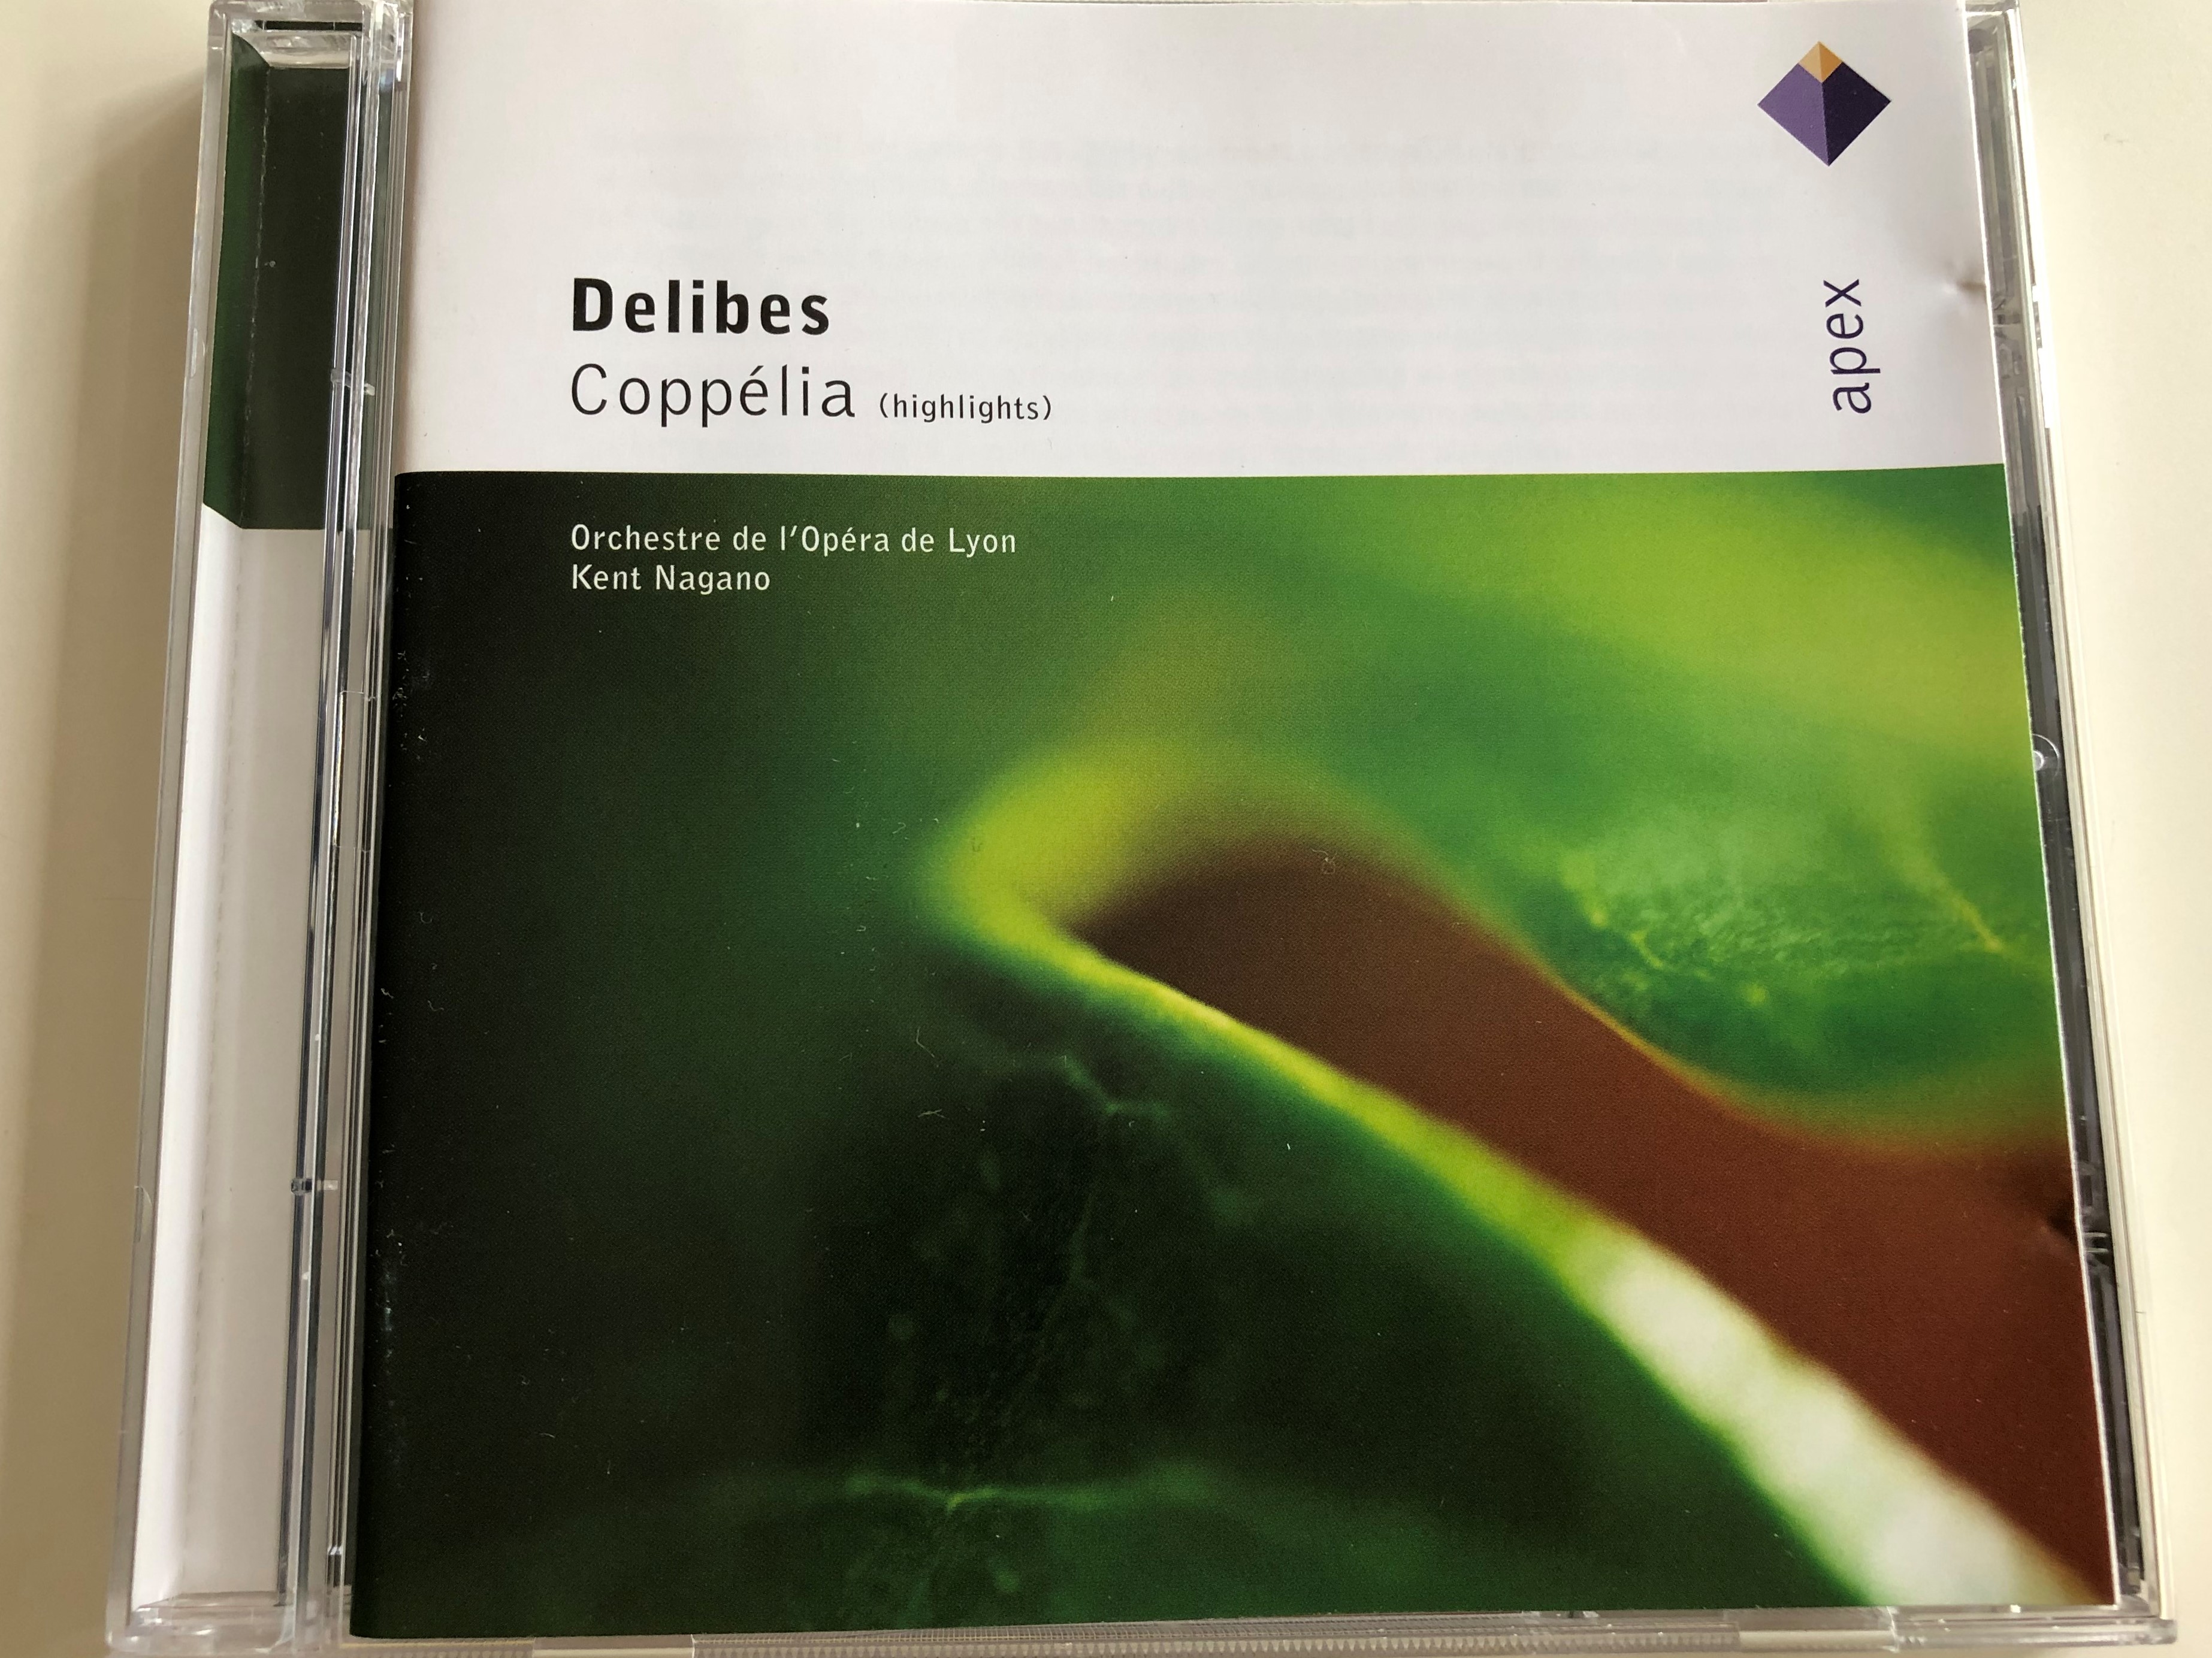 delibes-copp-lia-highlights-orchestre-de-l-op-ra-de-lyon-conducted-by-kent-nagano-audio-cd-2003-apex-warner-classics-1-.jpg